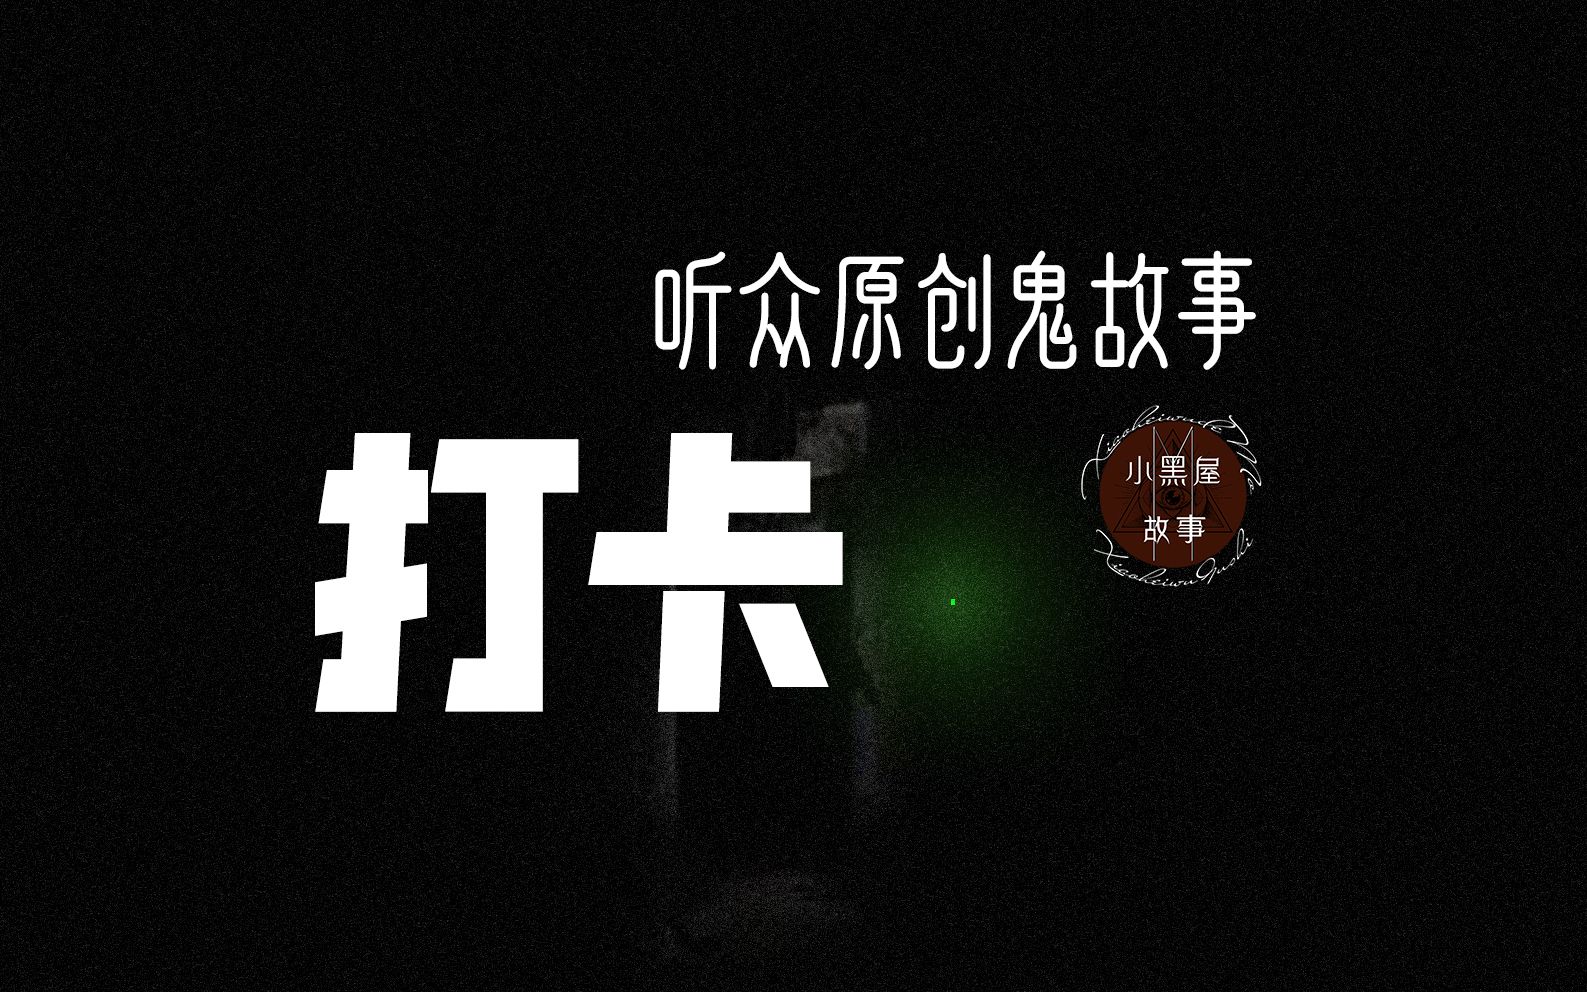 A岛匿名版《A岛电台》，中文版欢迎来到夜谷——一个怪诞小镇的故事-小黑屋的貘_mo-小黑屋的貘_mo-哔哩哔哩视频